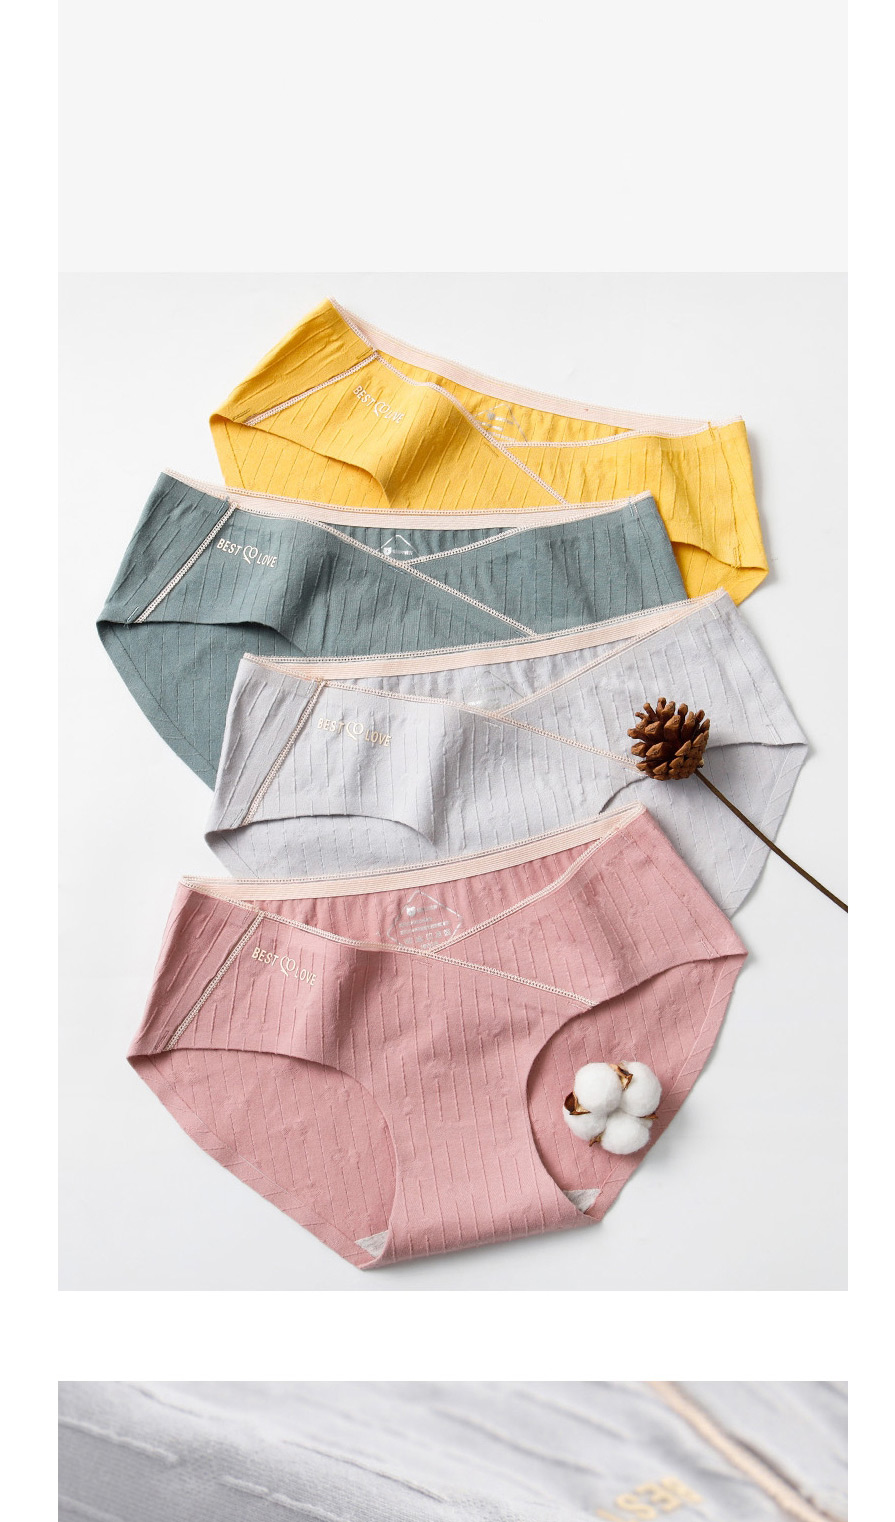 Fashion Taro (stitching Lace) Low-rise Belly Lift Cotton Maternity Panties,SLEEPWEAR & UNDERWEAR